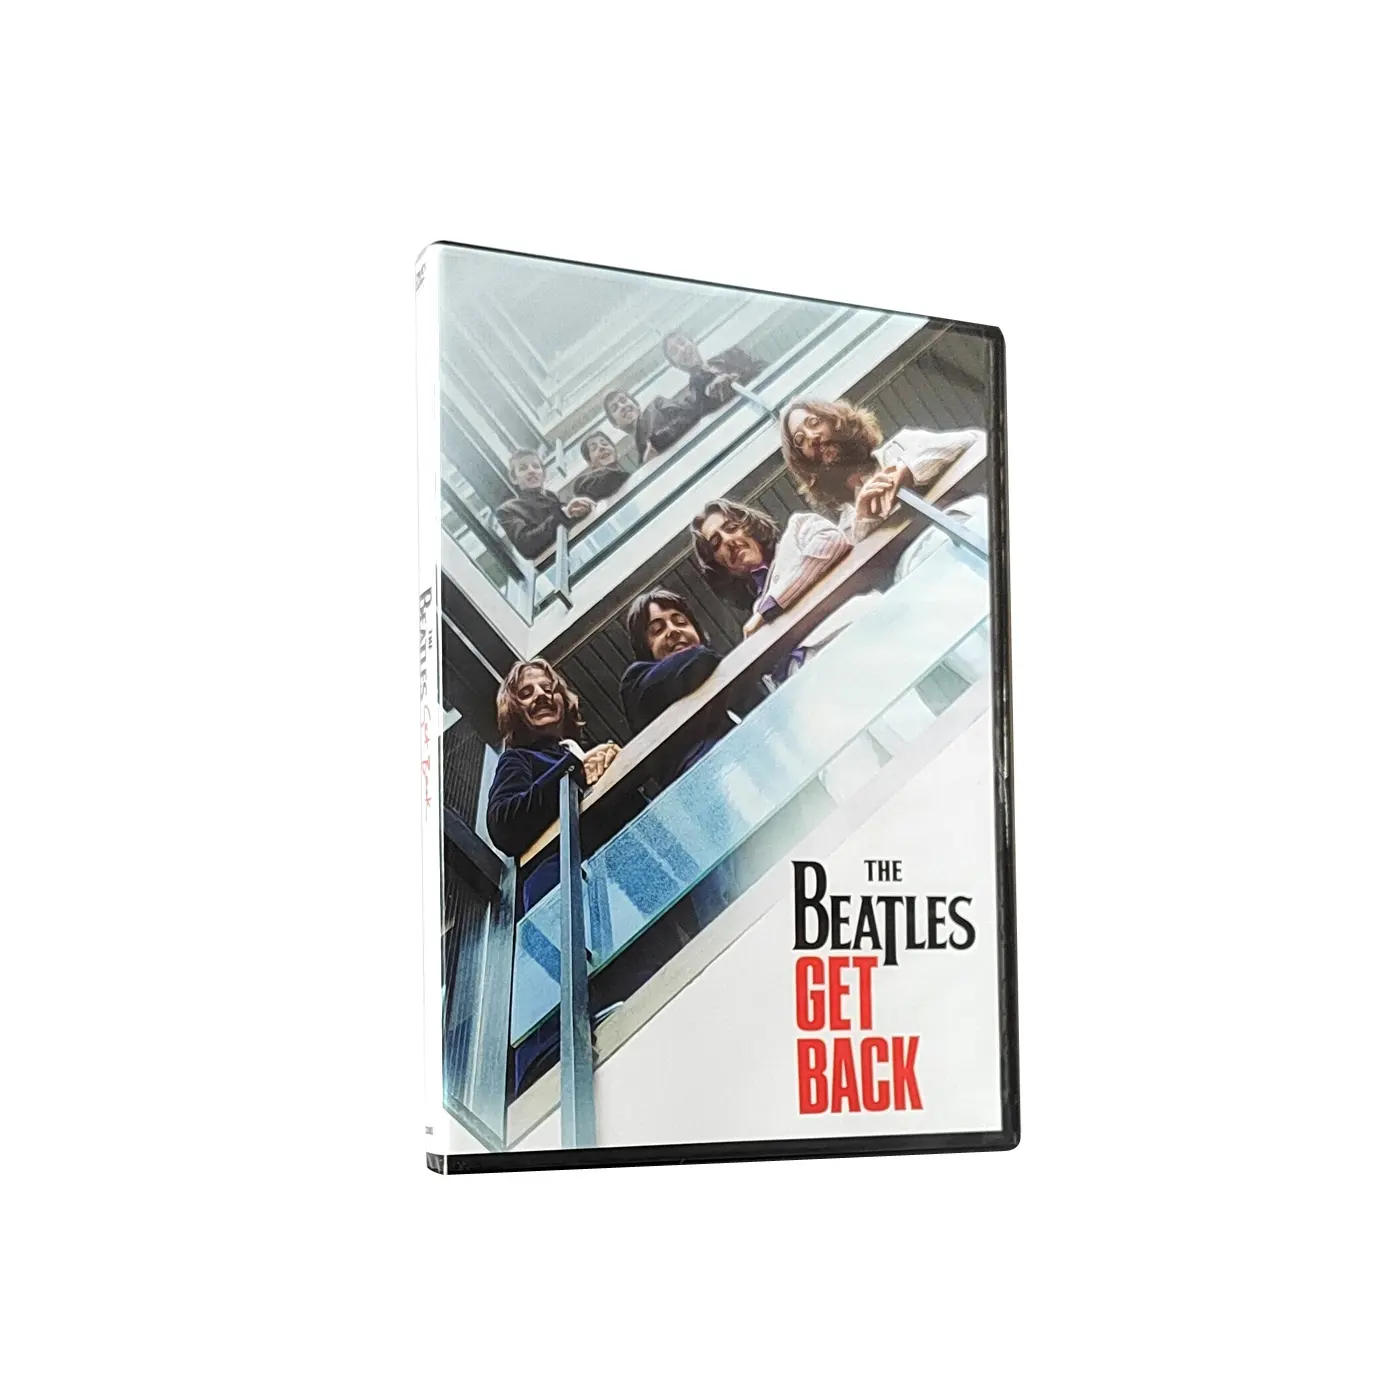 Acquista la nuova fabbrica di spedizione gratuita in cina set di DVD in scatola Film Film Disk duplicazione stampa TV mostra i Beatles ottieni indietro 3 dischi